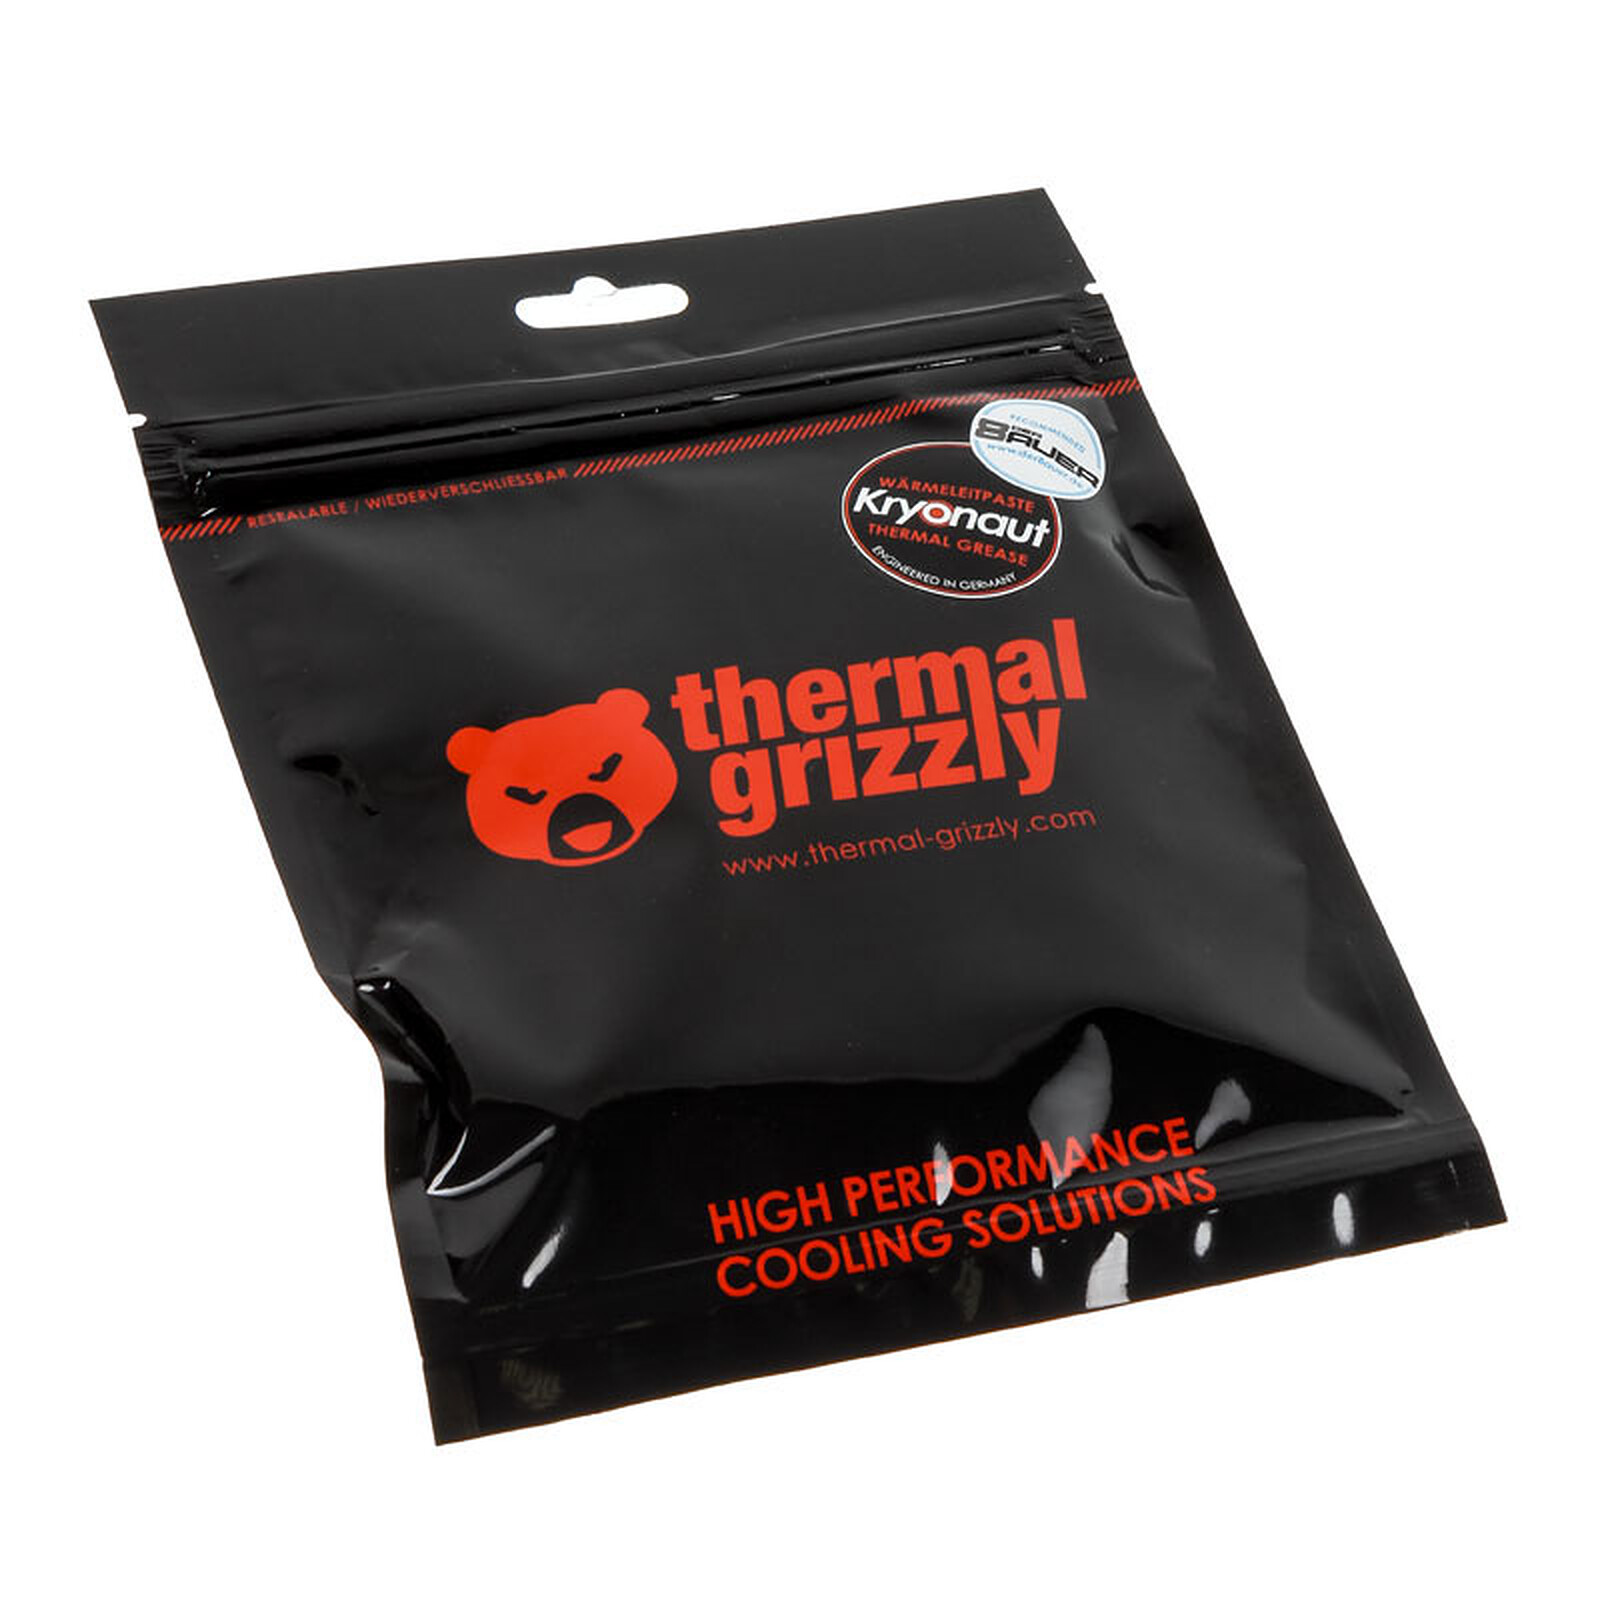 Thermal Grizzly Kryonaut (1 gramme) - Pâte thermique PC - Garantie 3 ans  LDLC